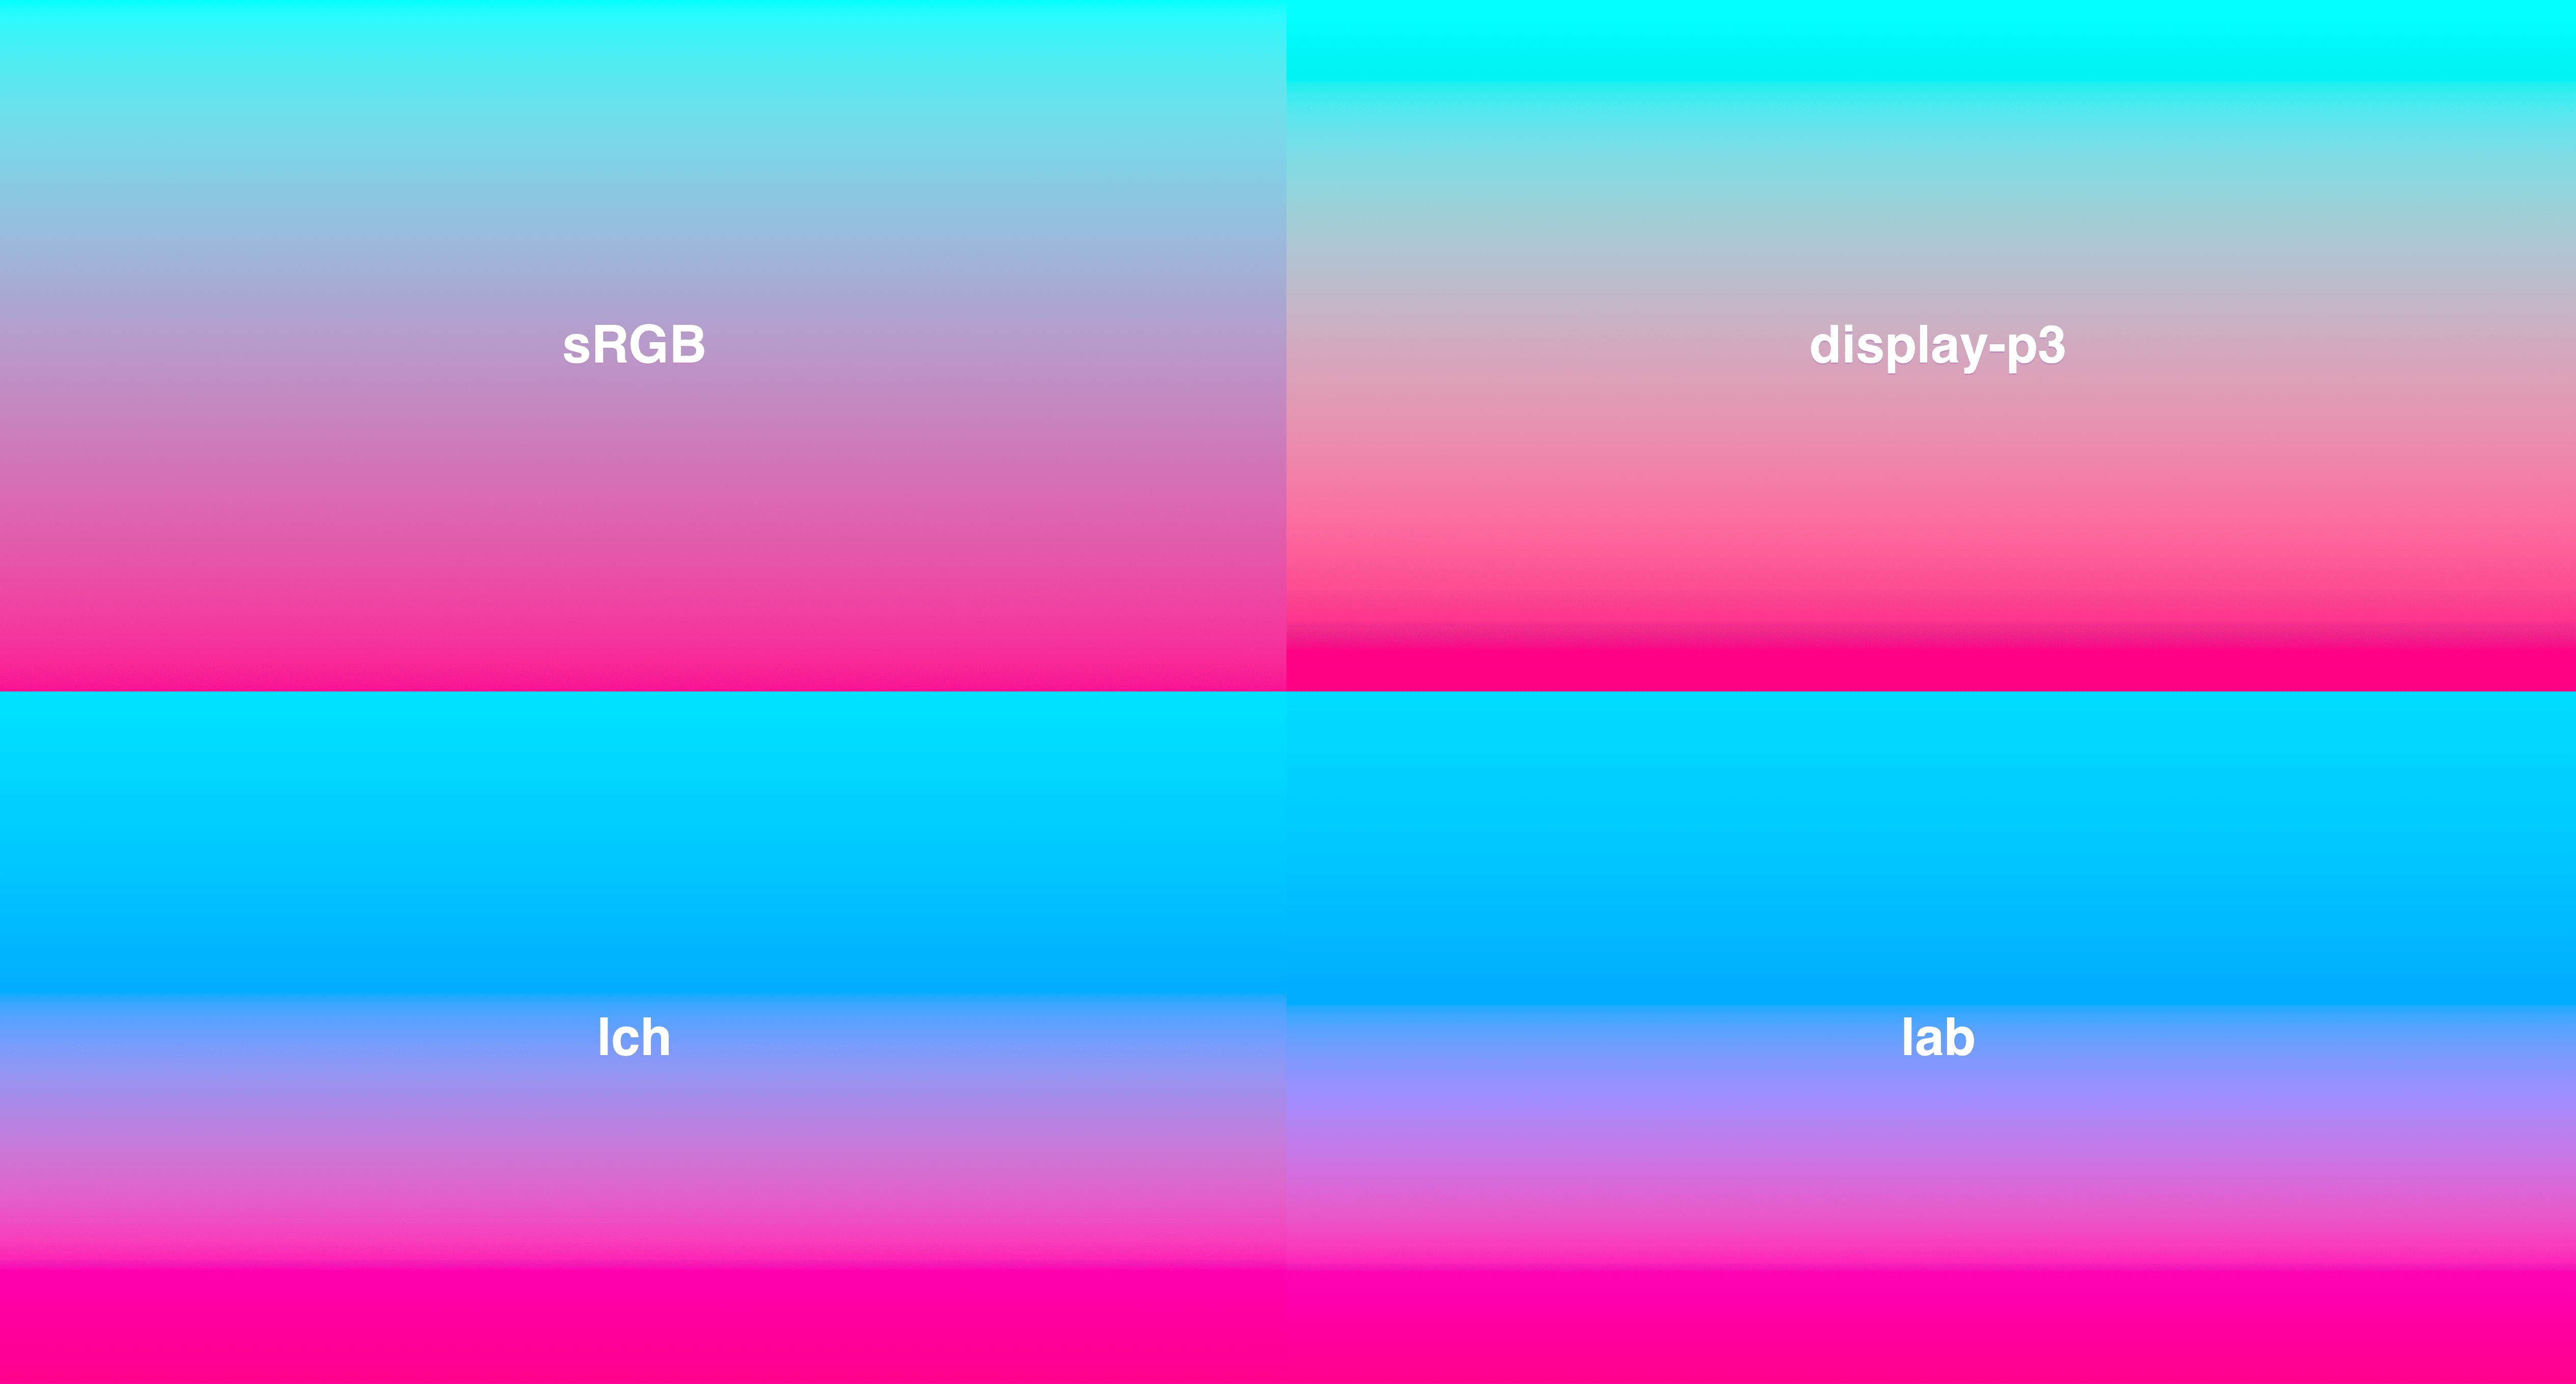 シアンから濃いピンクまでの 4 つのグラデーションがグリッドに表示されています。LCH と LAB はより一貫した鮮明さがあり、sRGB の中央はやや彩度が低くなります。